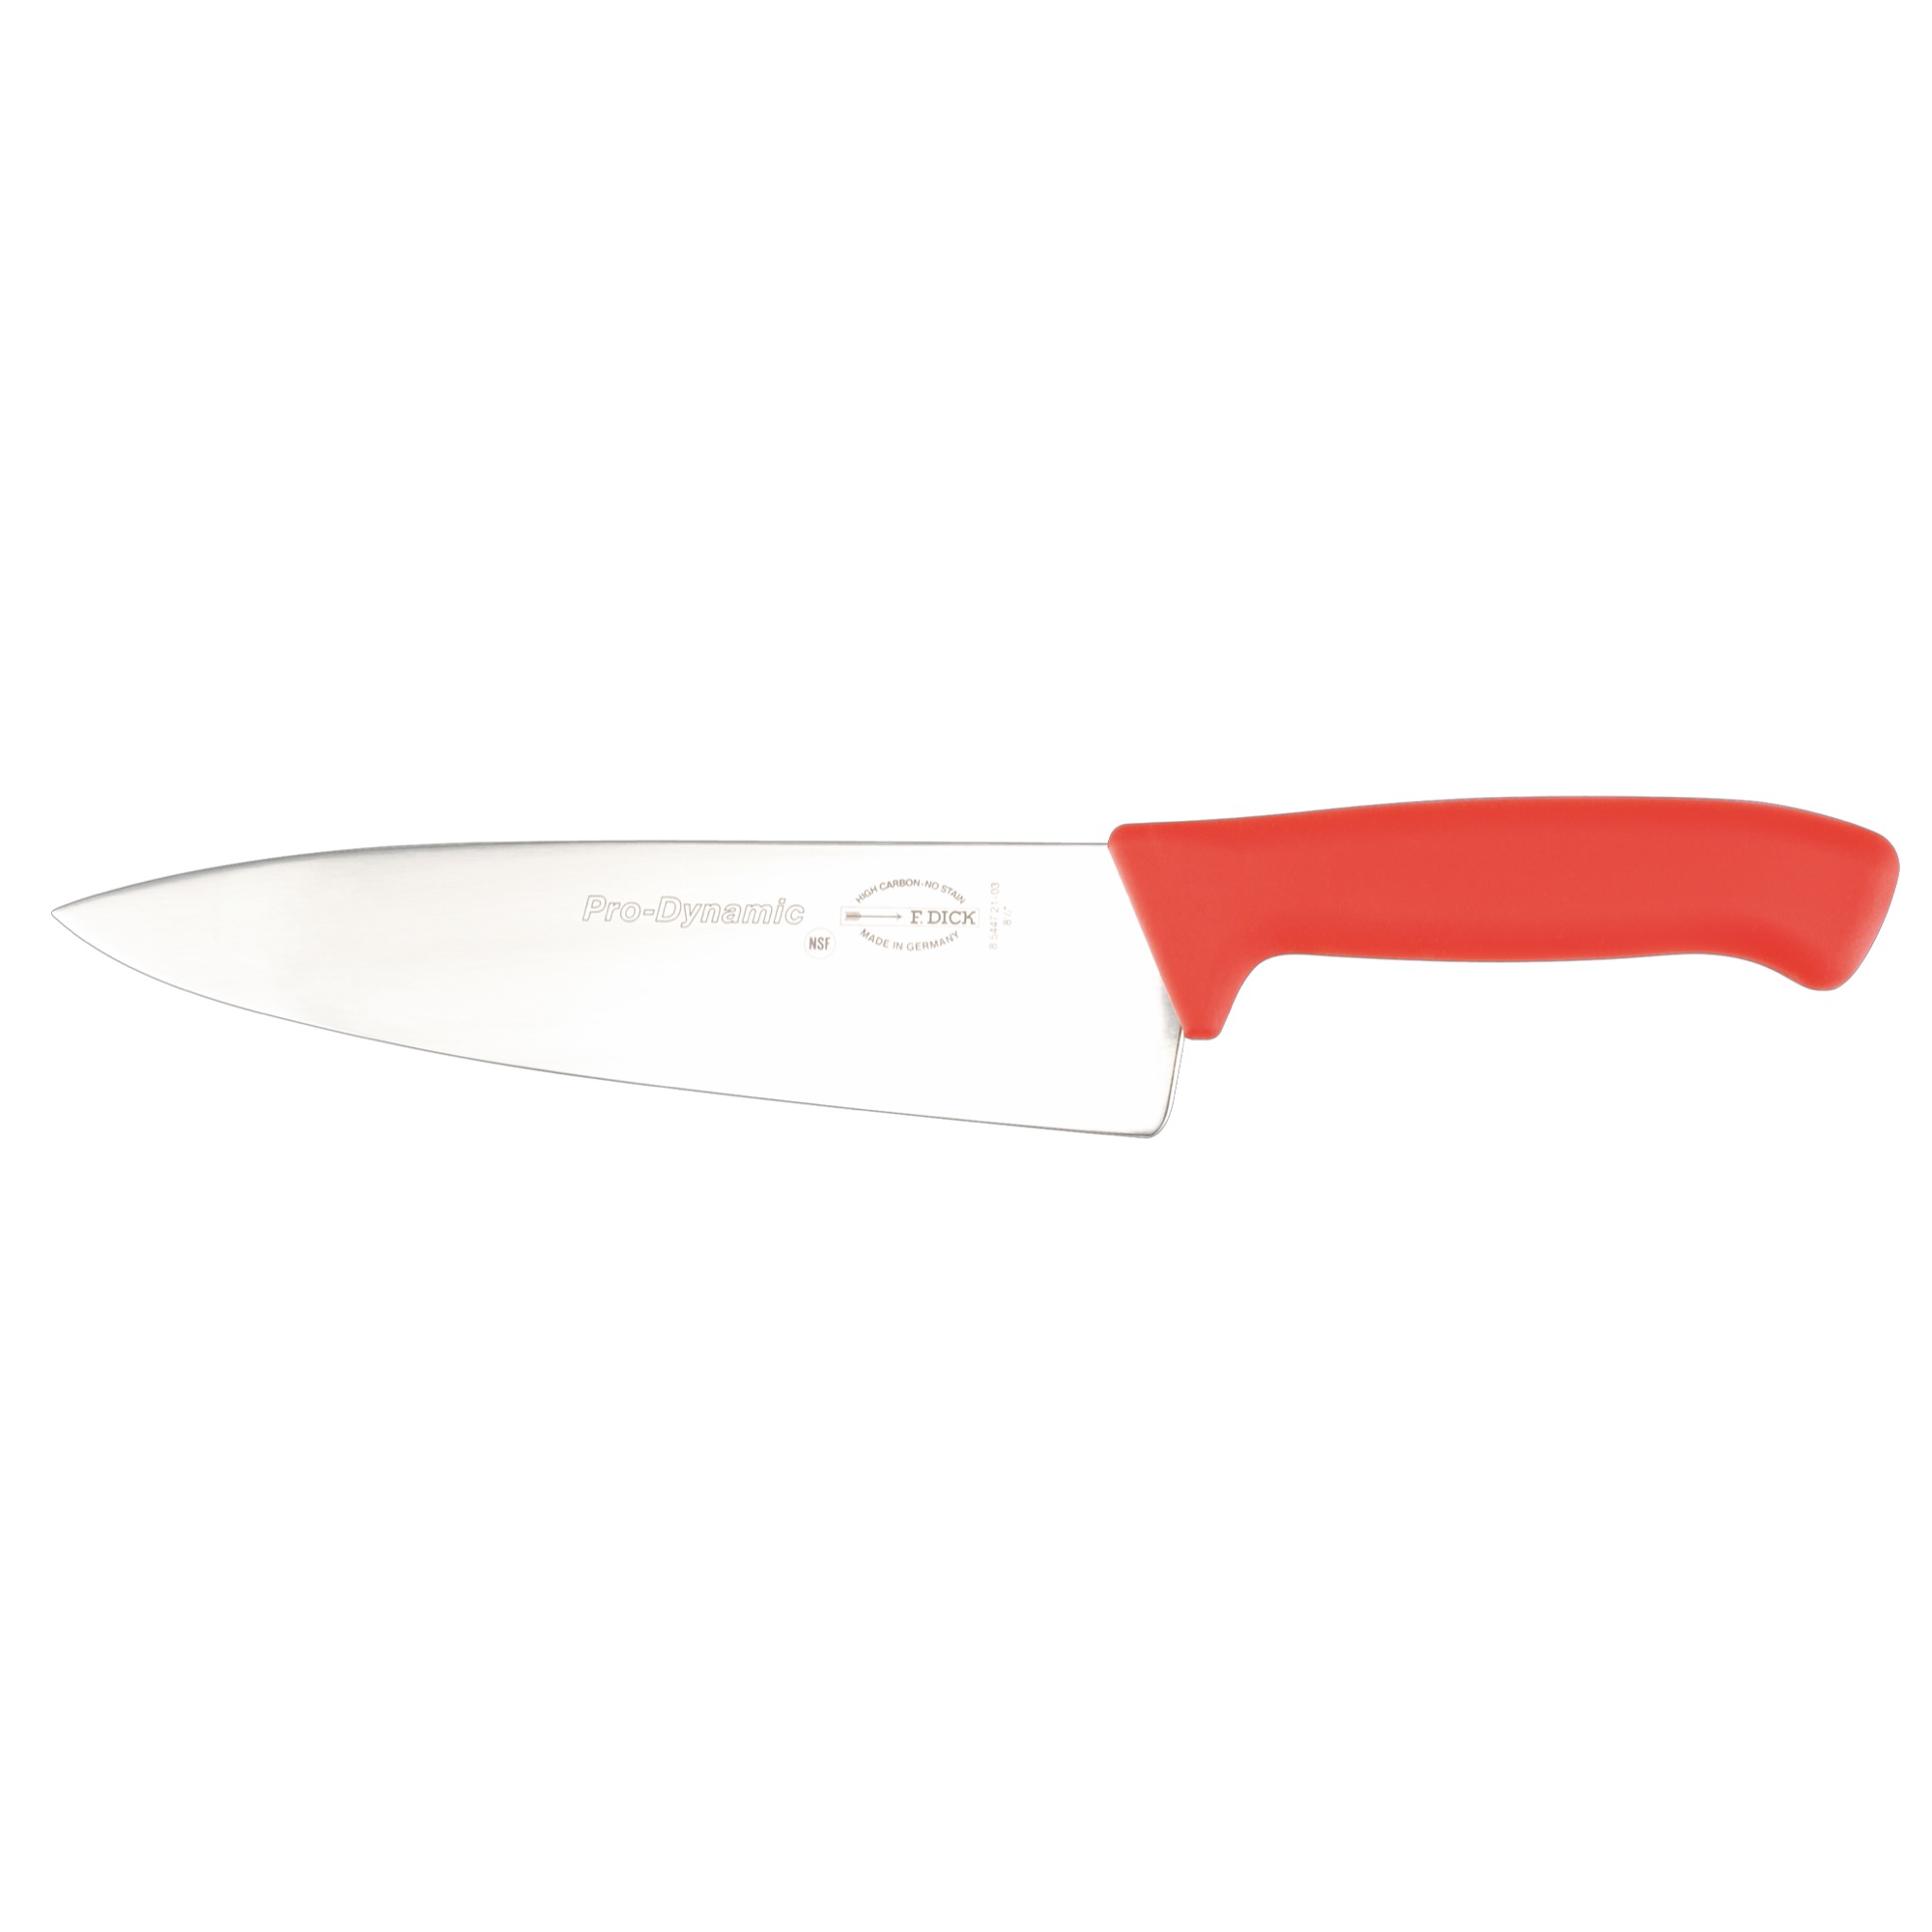 Dick nôž kuchársky 21cm červený